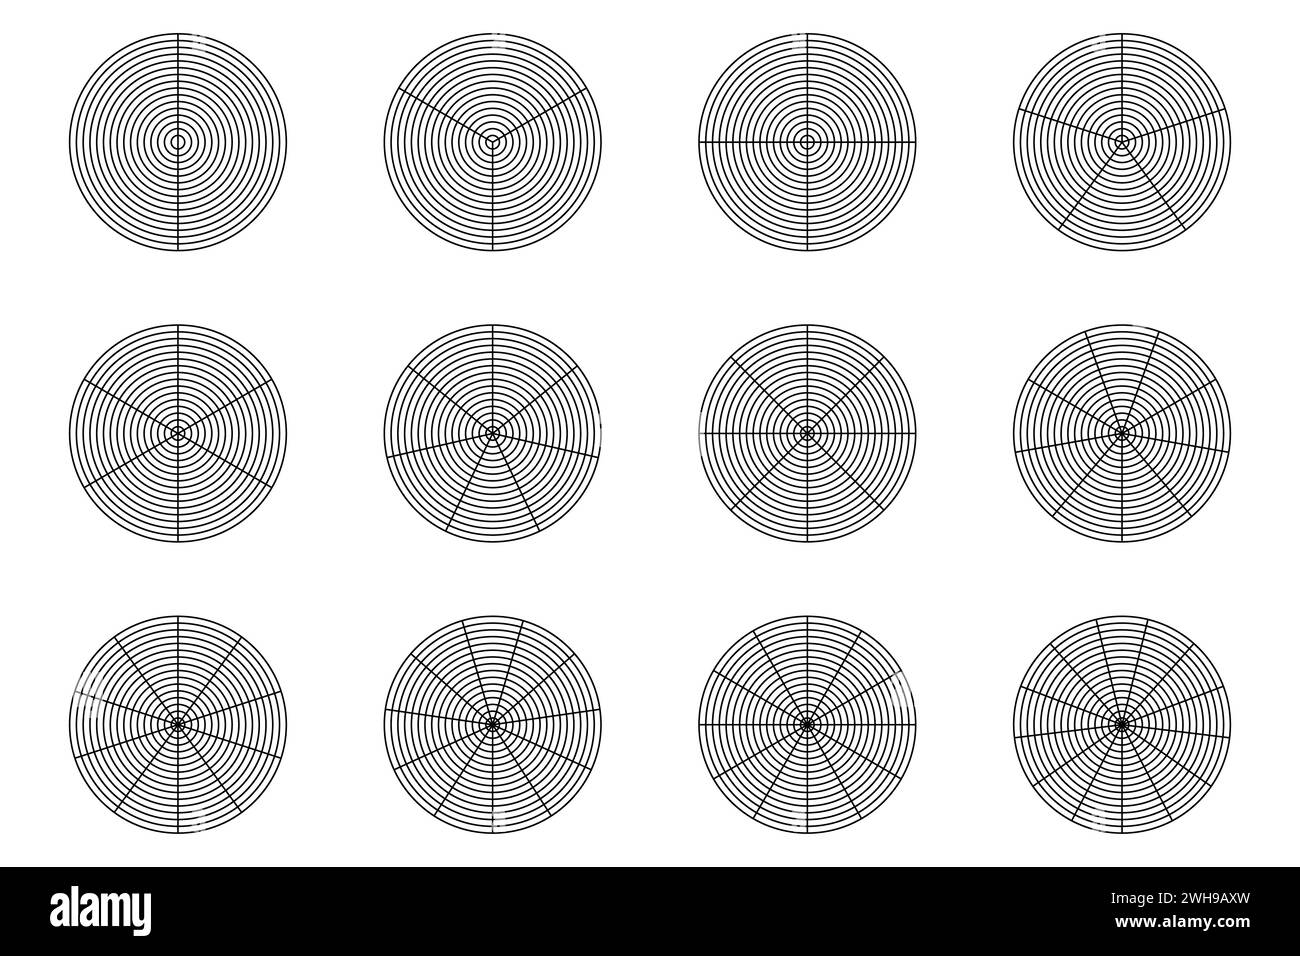 Grille polaire isolée, vecteur de grille circulaire de coordonnées polaires. Illustration de Vecteur